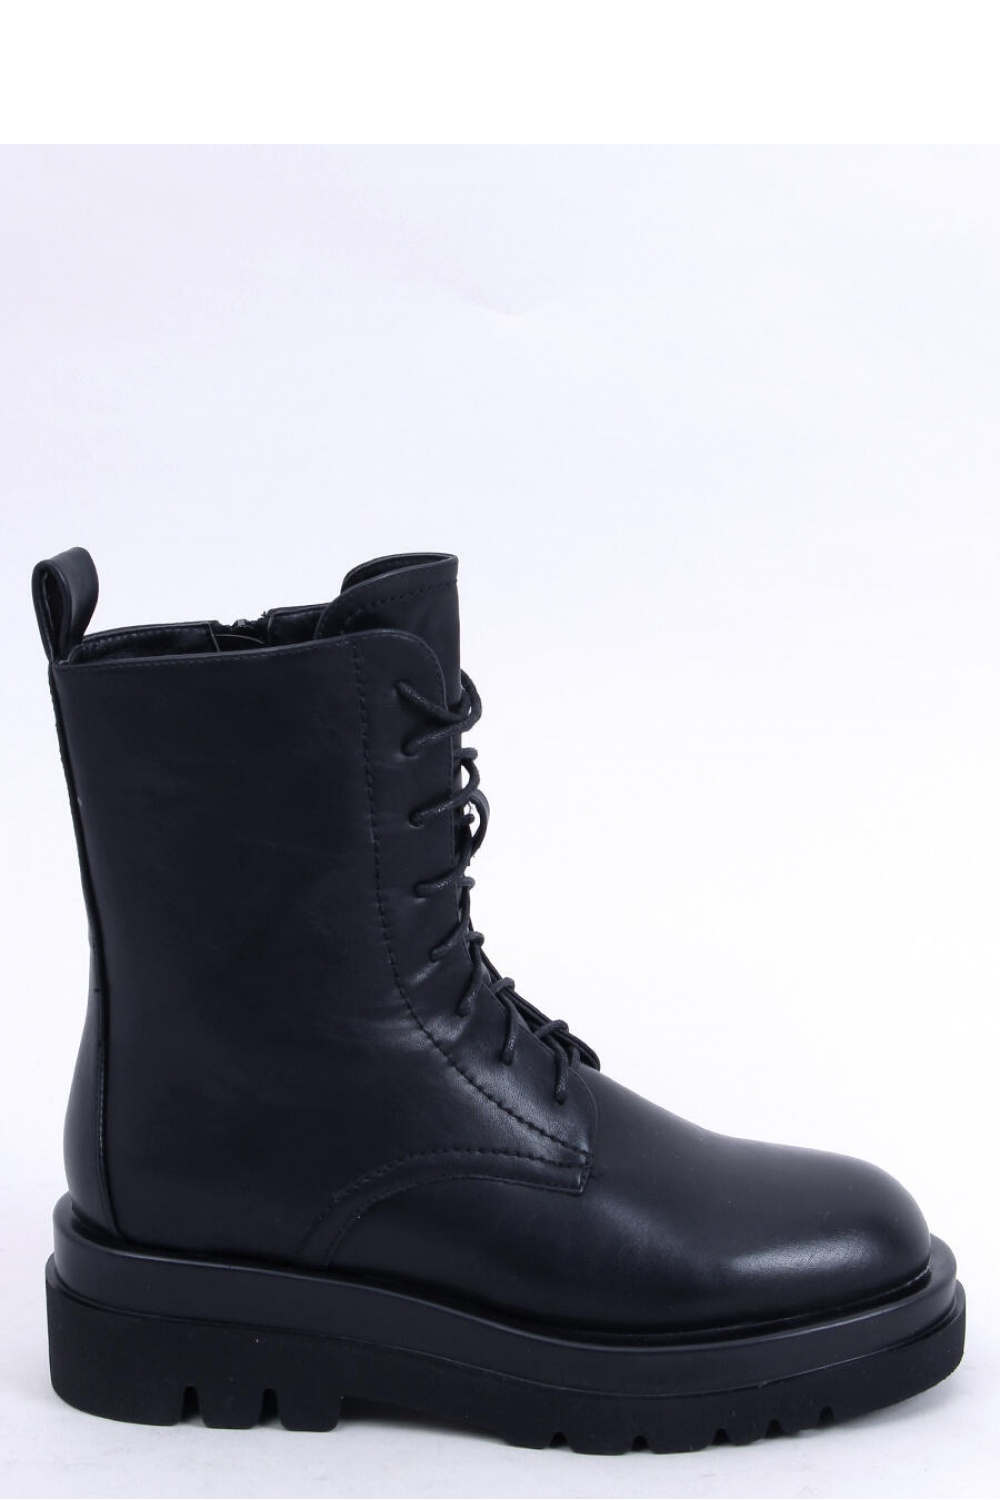  Boots model 174062 Inello  black